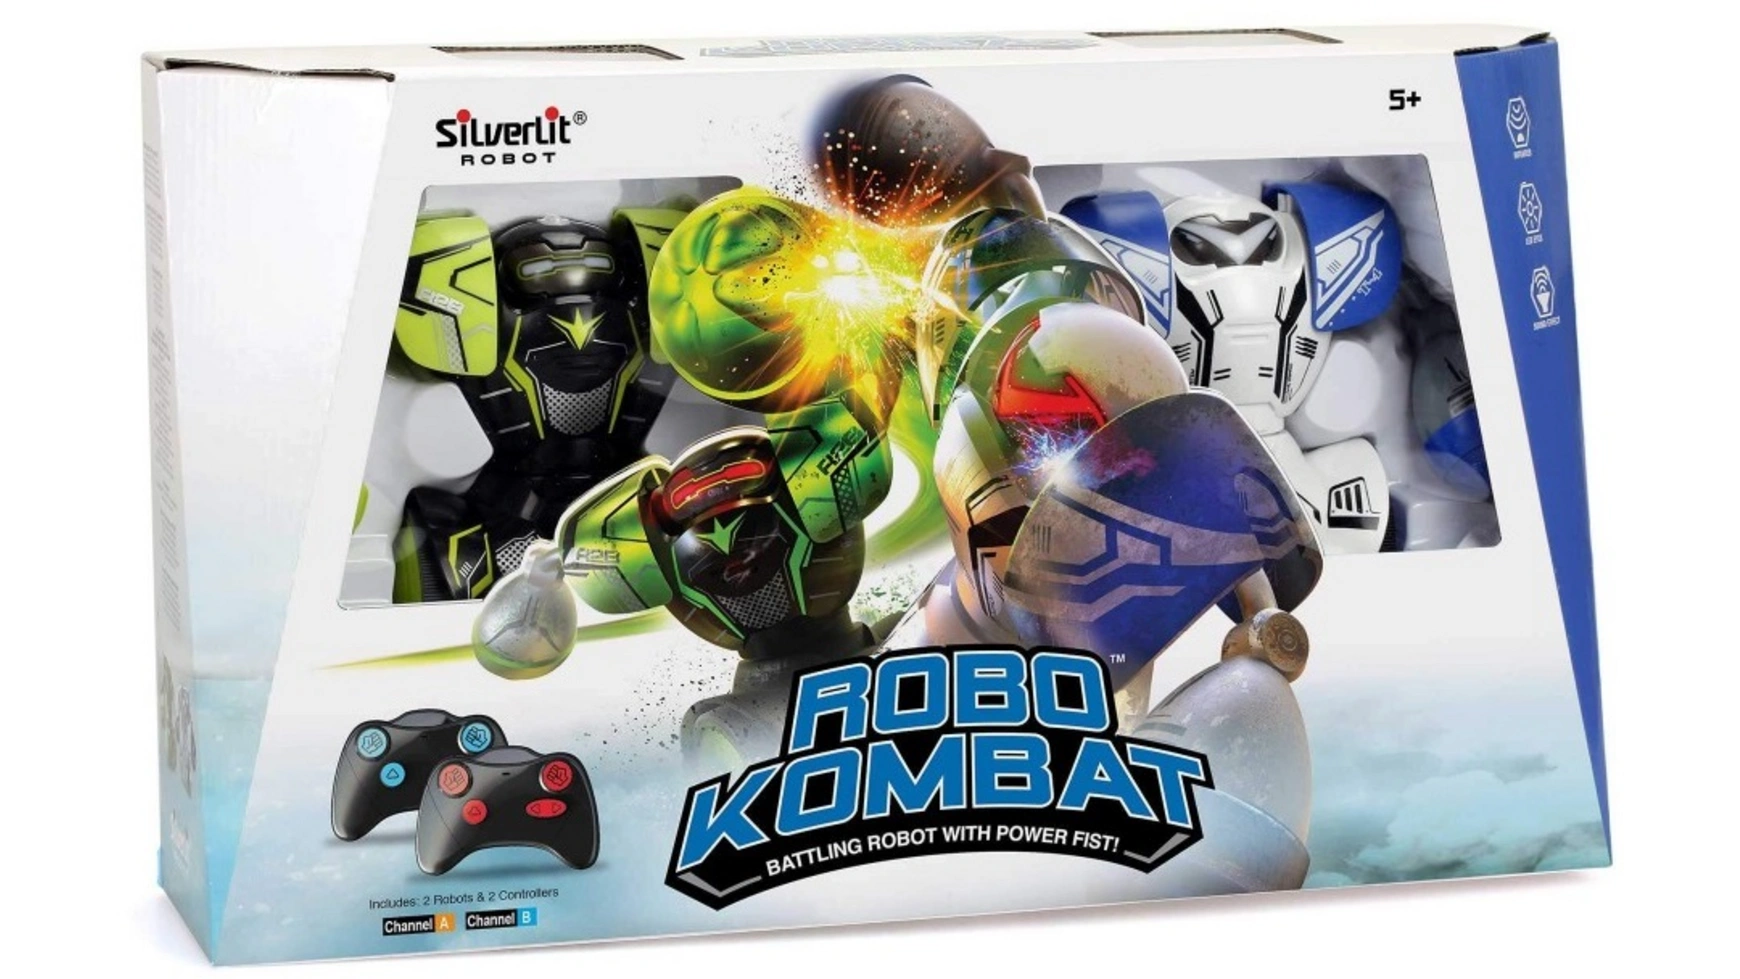 цена Silverlit робот для кулачного боя Robo Kombat